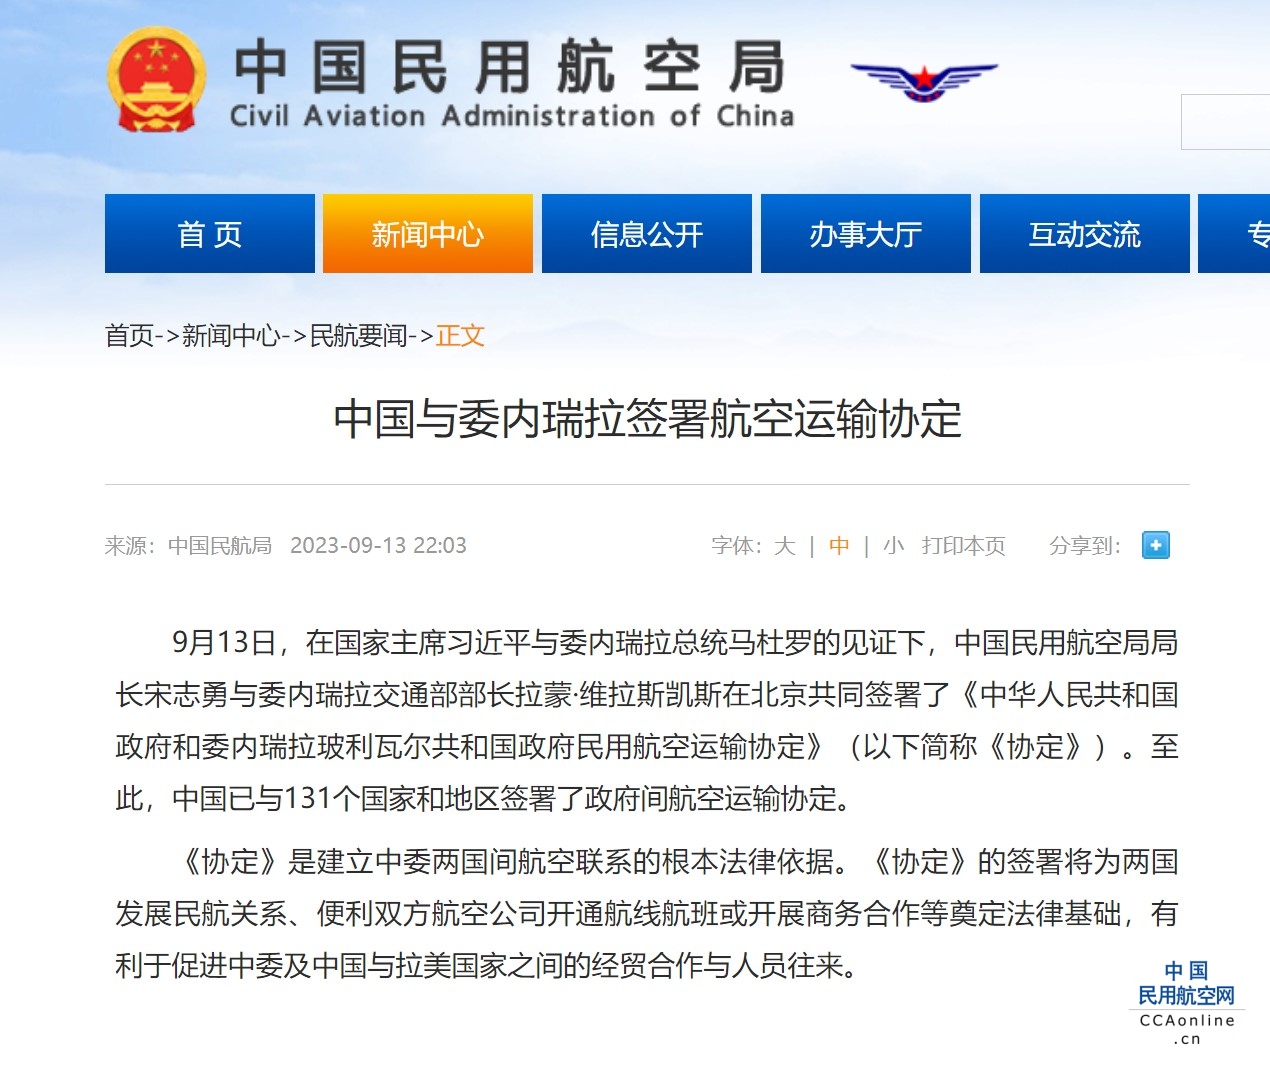 中国与委内瑞拉签署航空运输协定